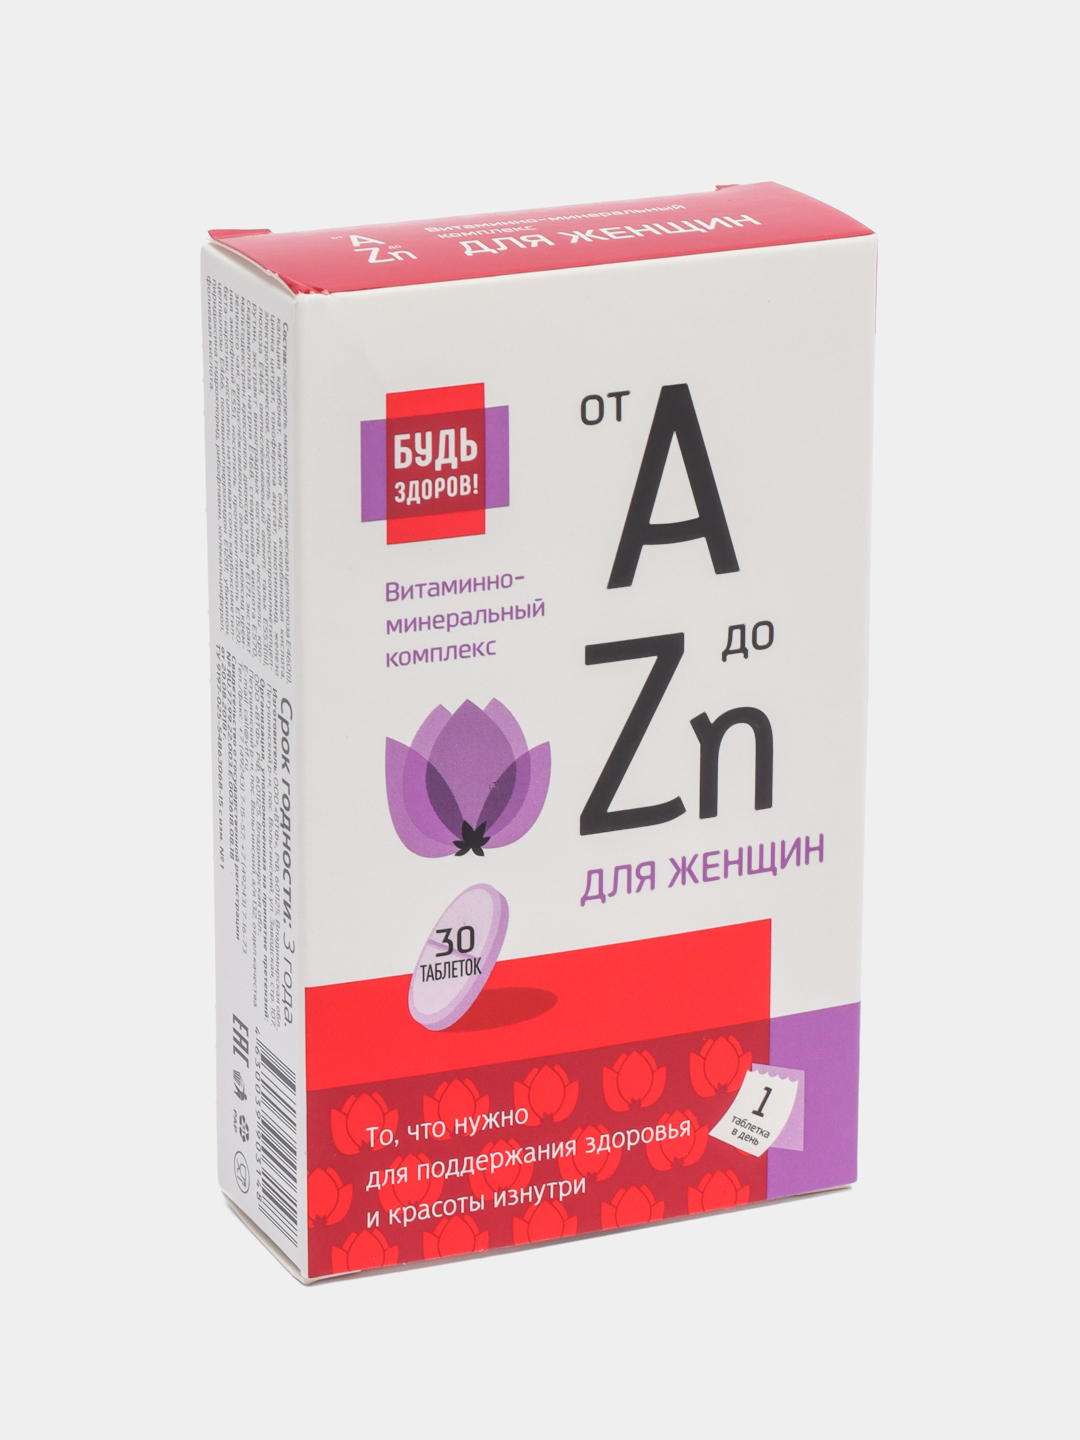 Витамины от а до zn отзывы. Витаминно-минеральный комплекс от а до ZN для женщин. От а до цинка витаминно-минеральный комплекс для женщин. Будь здоров! Для женщин от a до ZN таблетки. Витаминно-минеральный комплекс от а до ZN для женщин отзывы.